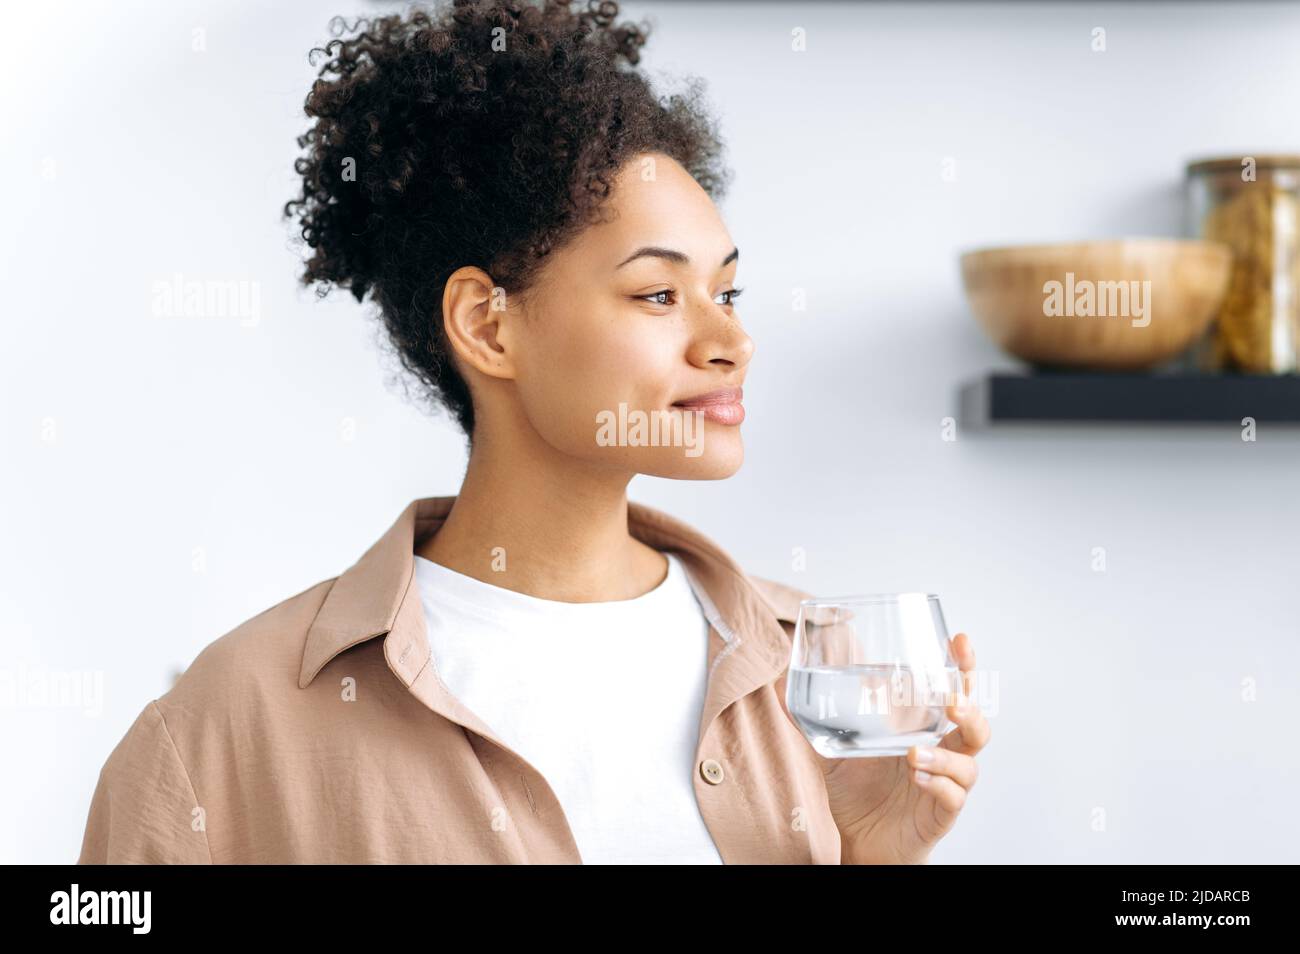 Foto de una sana chica afroamericana de pelo rizado que sostiene un vaso de agua limpia, cuida de la salud, controla la tarifa diaria del agua corporal, mira, sueña, sonríe Foto de stock